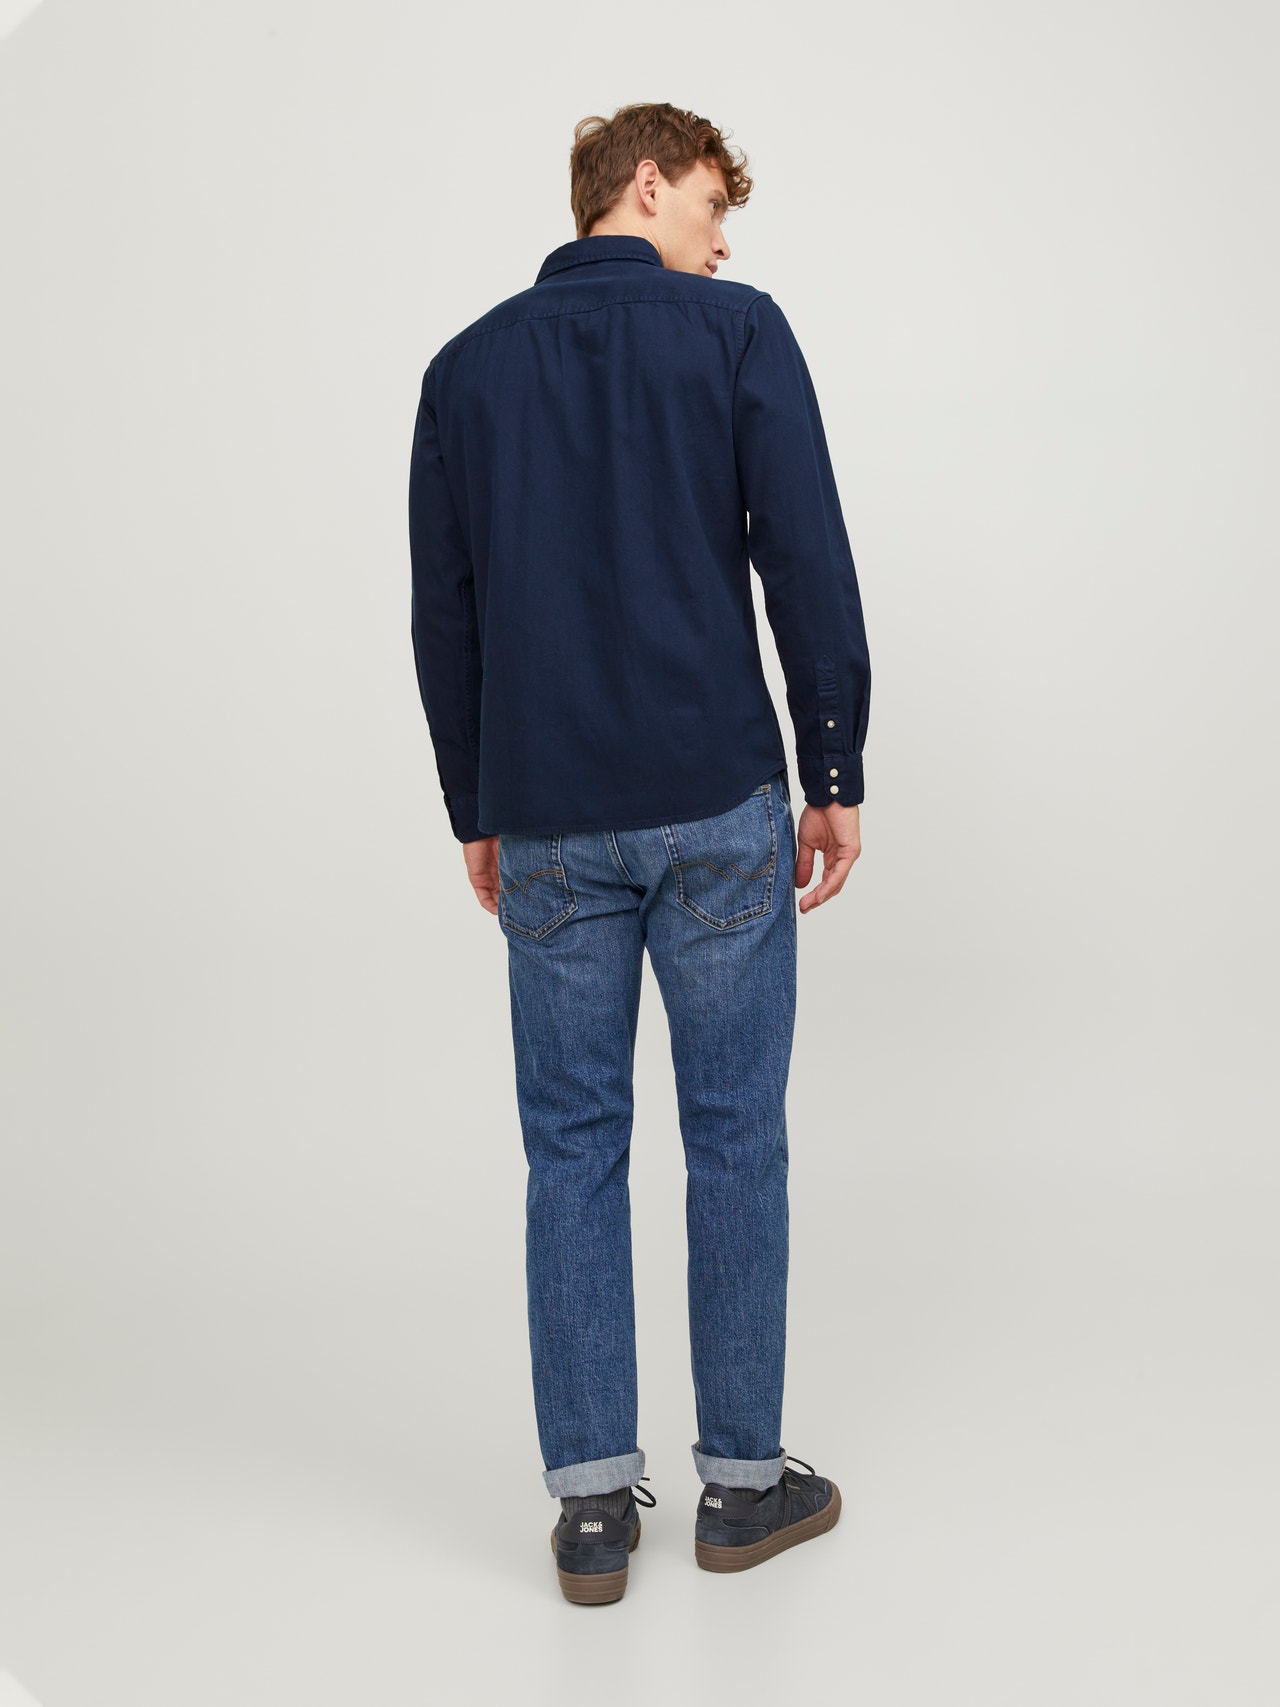 Jack & Jones Camicia in jeans Slim Fit -Dark Navy - 12138115